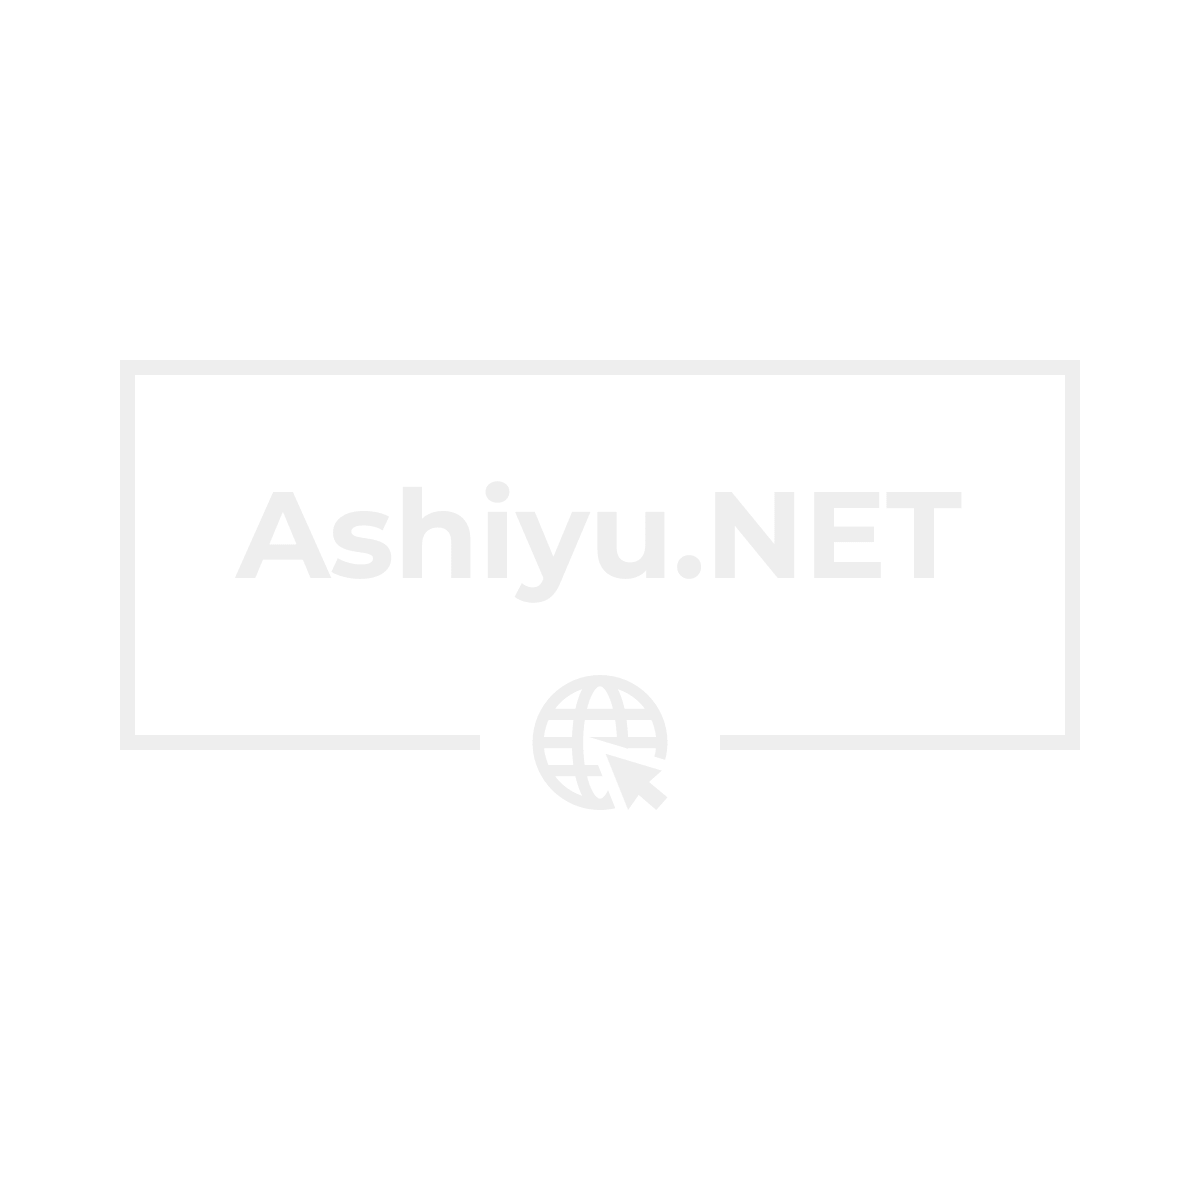 Ashiyu.NET